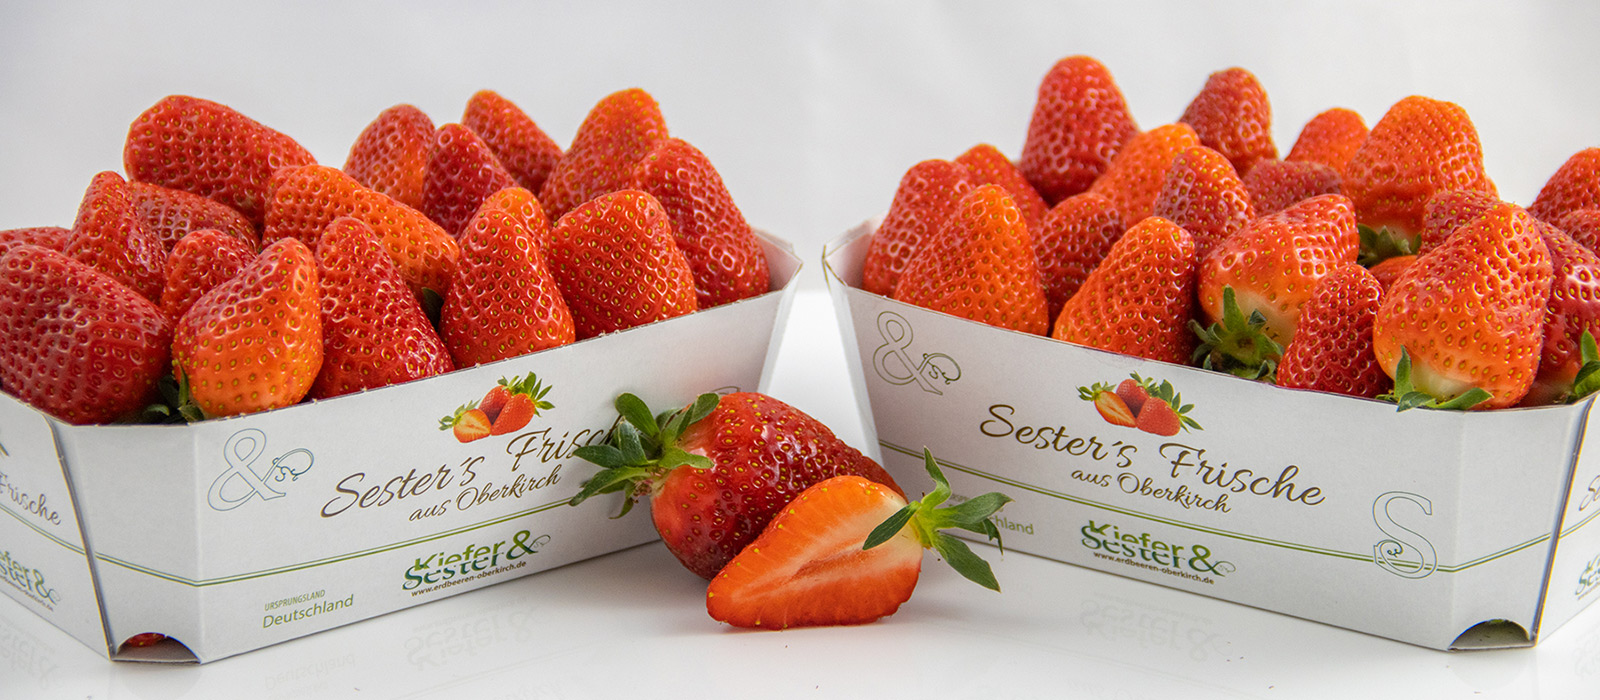 Erdbeeren Kiefer & Sester